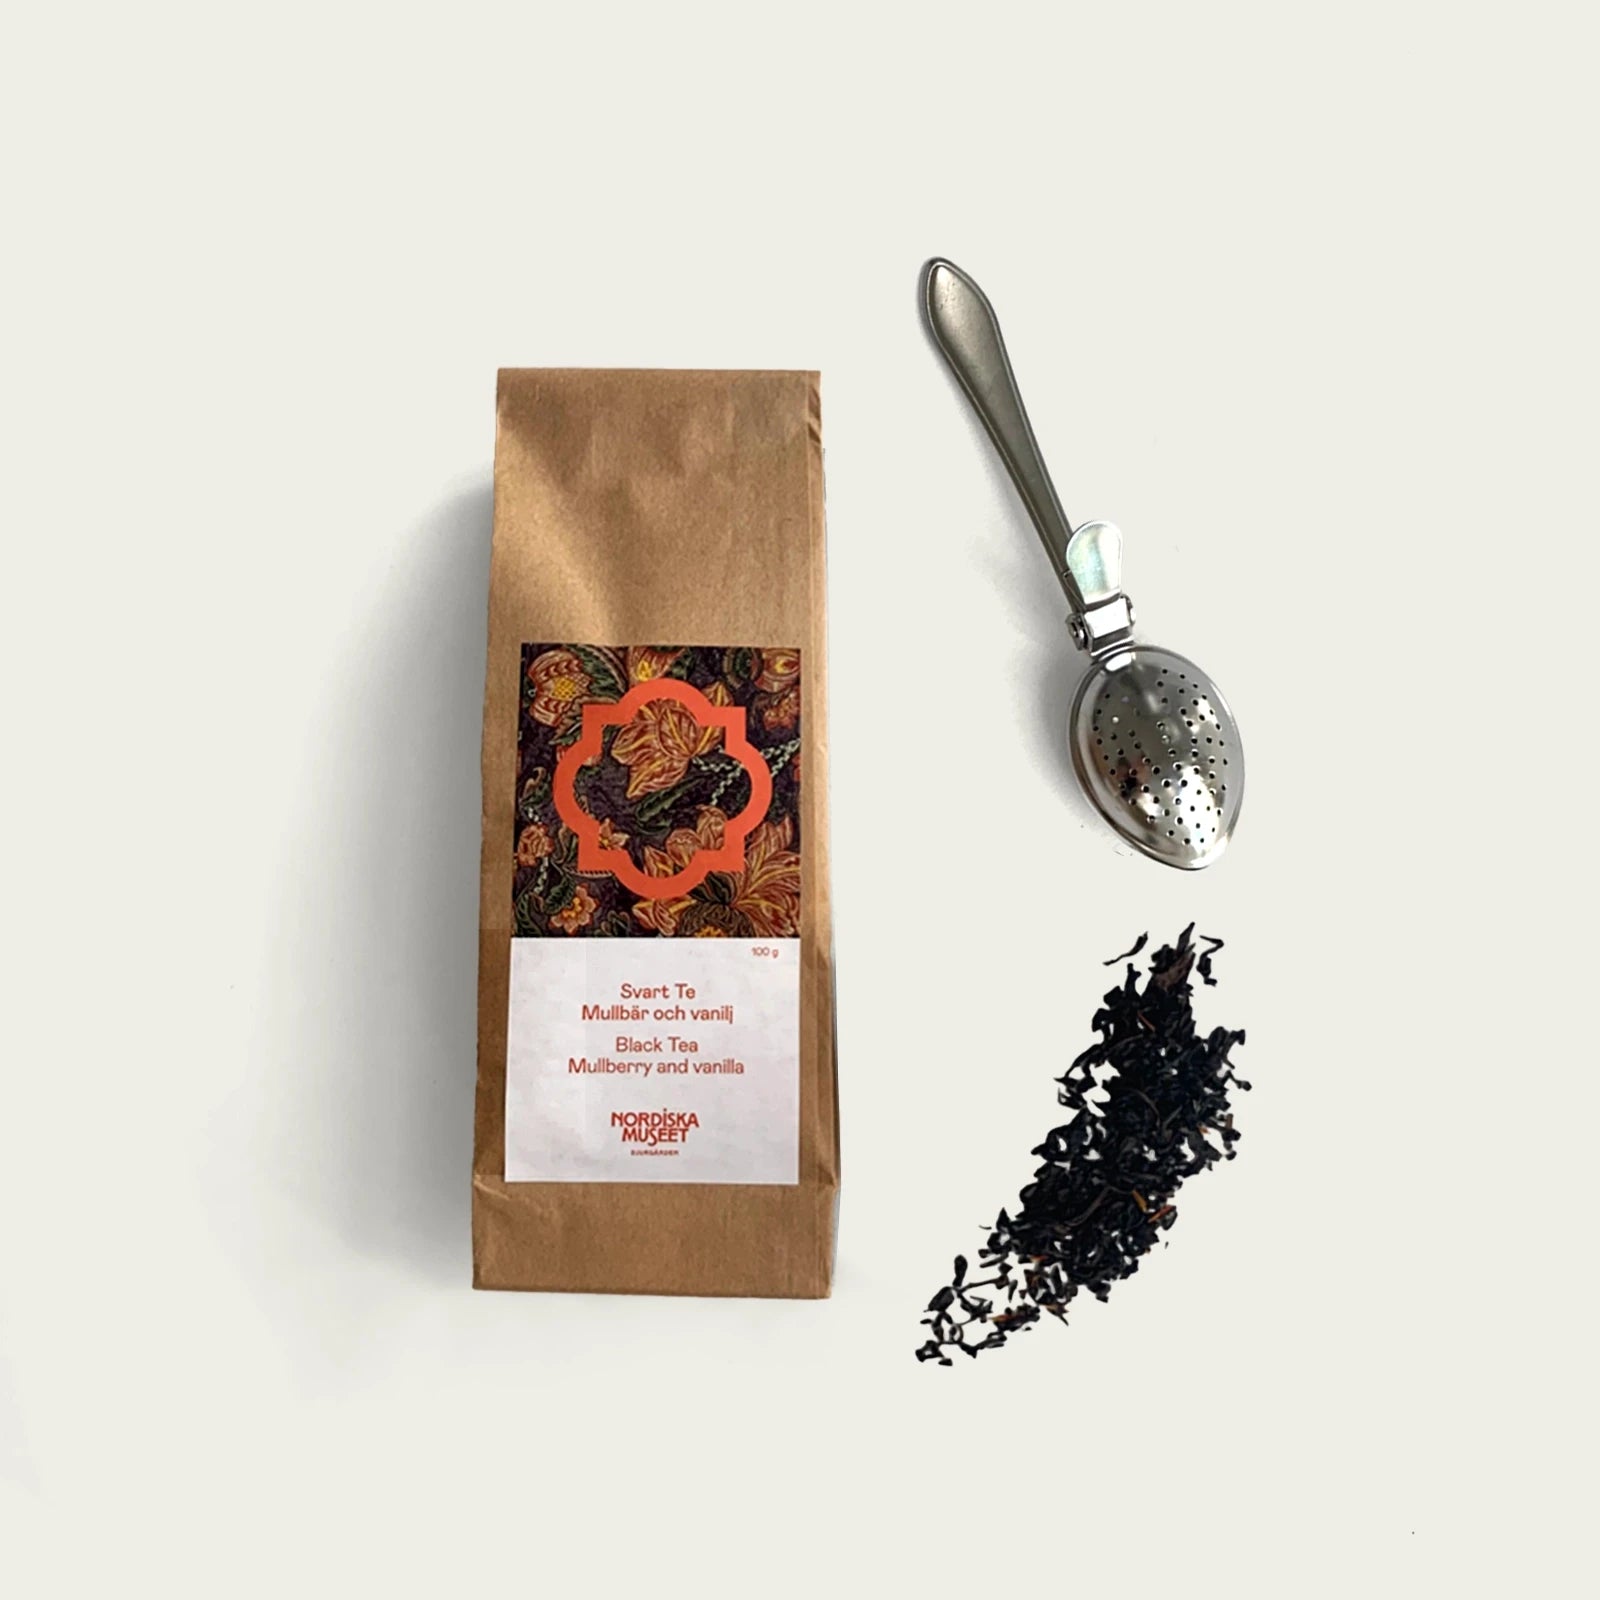     te-forpackning-for-svart-te-med-smak-av-mullbar-och-vanilj